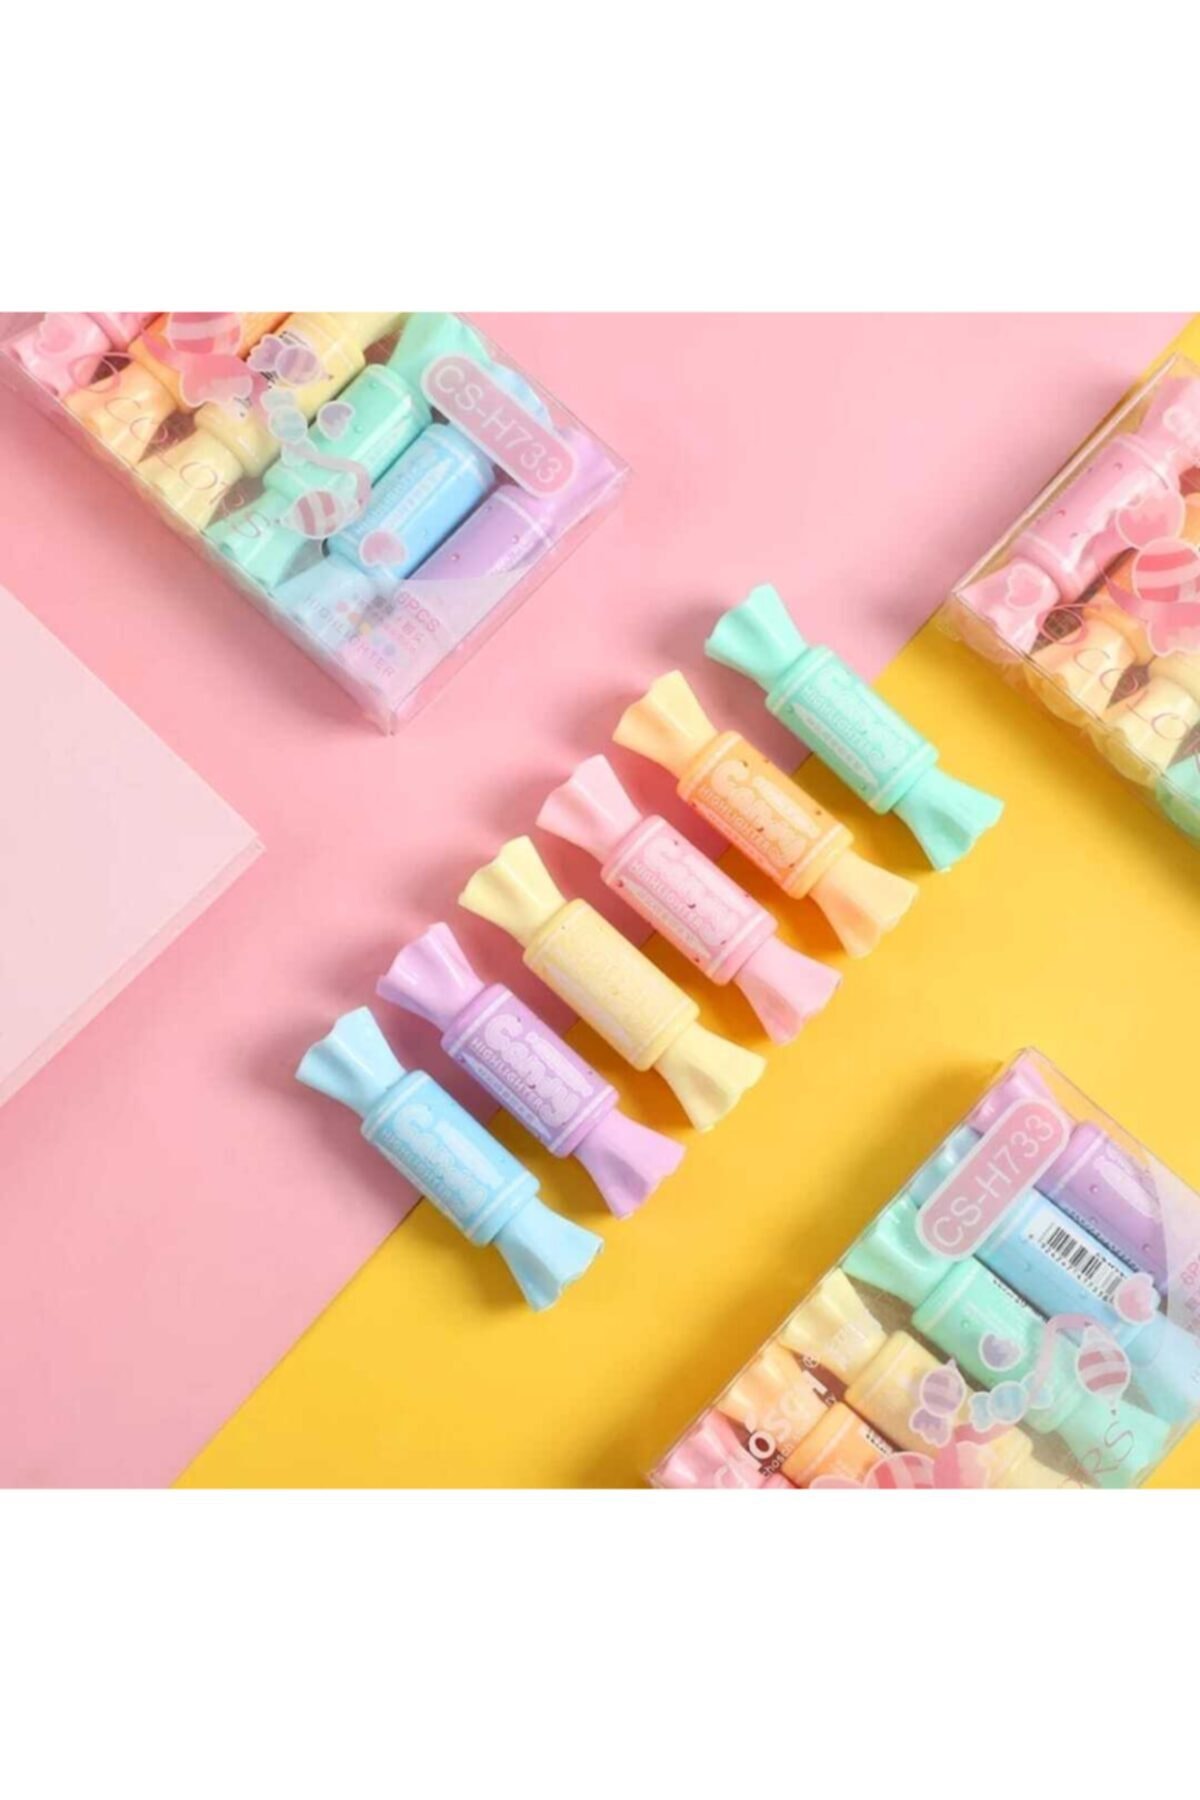 EGE FOTOKOPİ ve KIRTASİYE Sweet Candy - Şeker Şekilli Fosforlu Kalem Seti - Çift Taraflı 6 Renkli Set